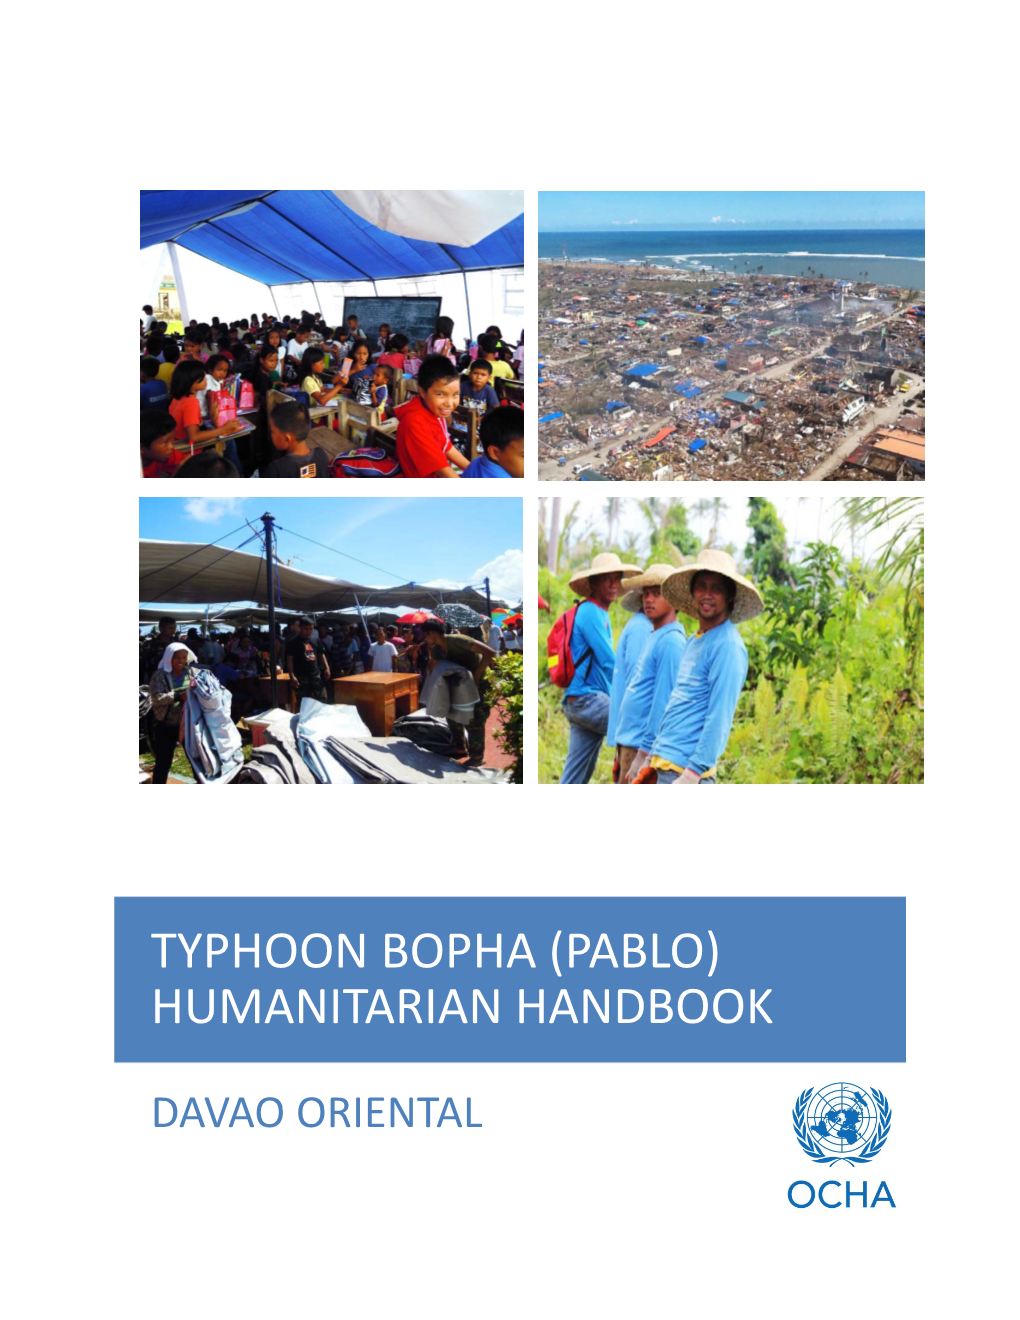 Typhoon Bopha (Pablo) Humanitarian Handbook